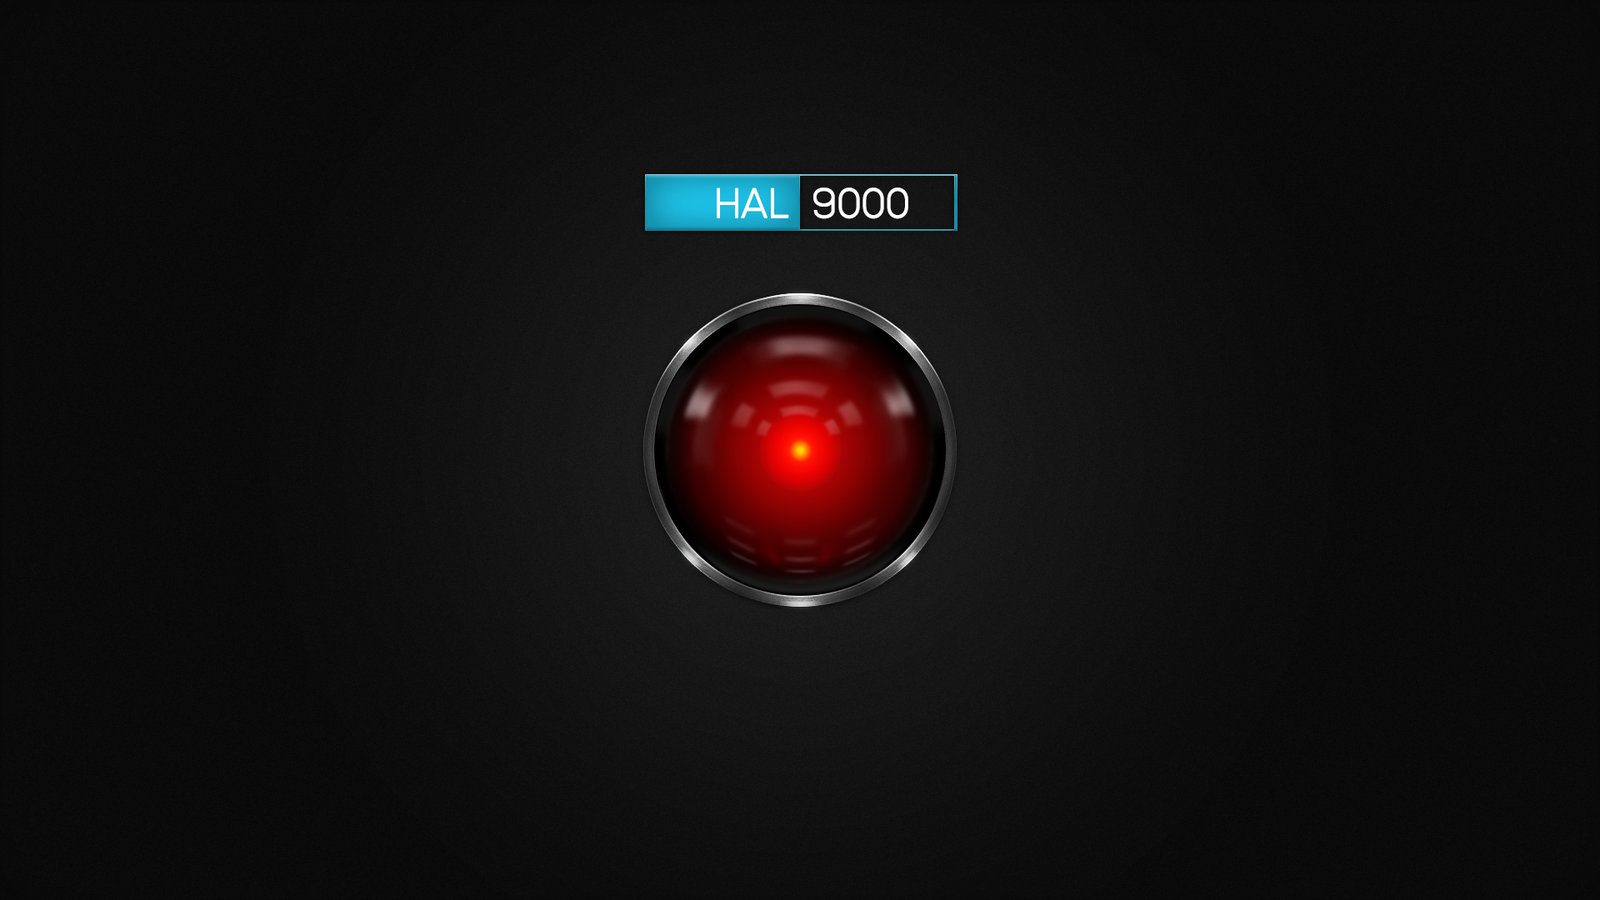 Nếu bạn đang tìm kiếm một hình nền HAL 9000 đơn giản nhưng ấn tượng, thì đây là sự lựa chọn hoàn hảo dành cho bạn. Với thiết kế tối giản nhưng không kém phần tinh tế, bạn sẽ không thể nào rời mắt khỏi nó.